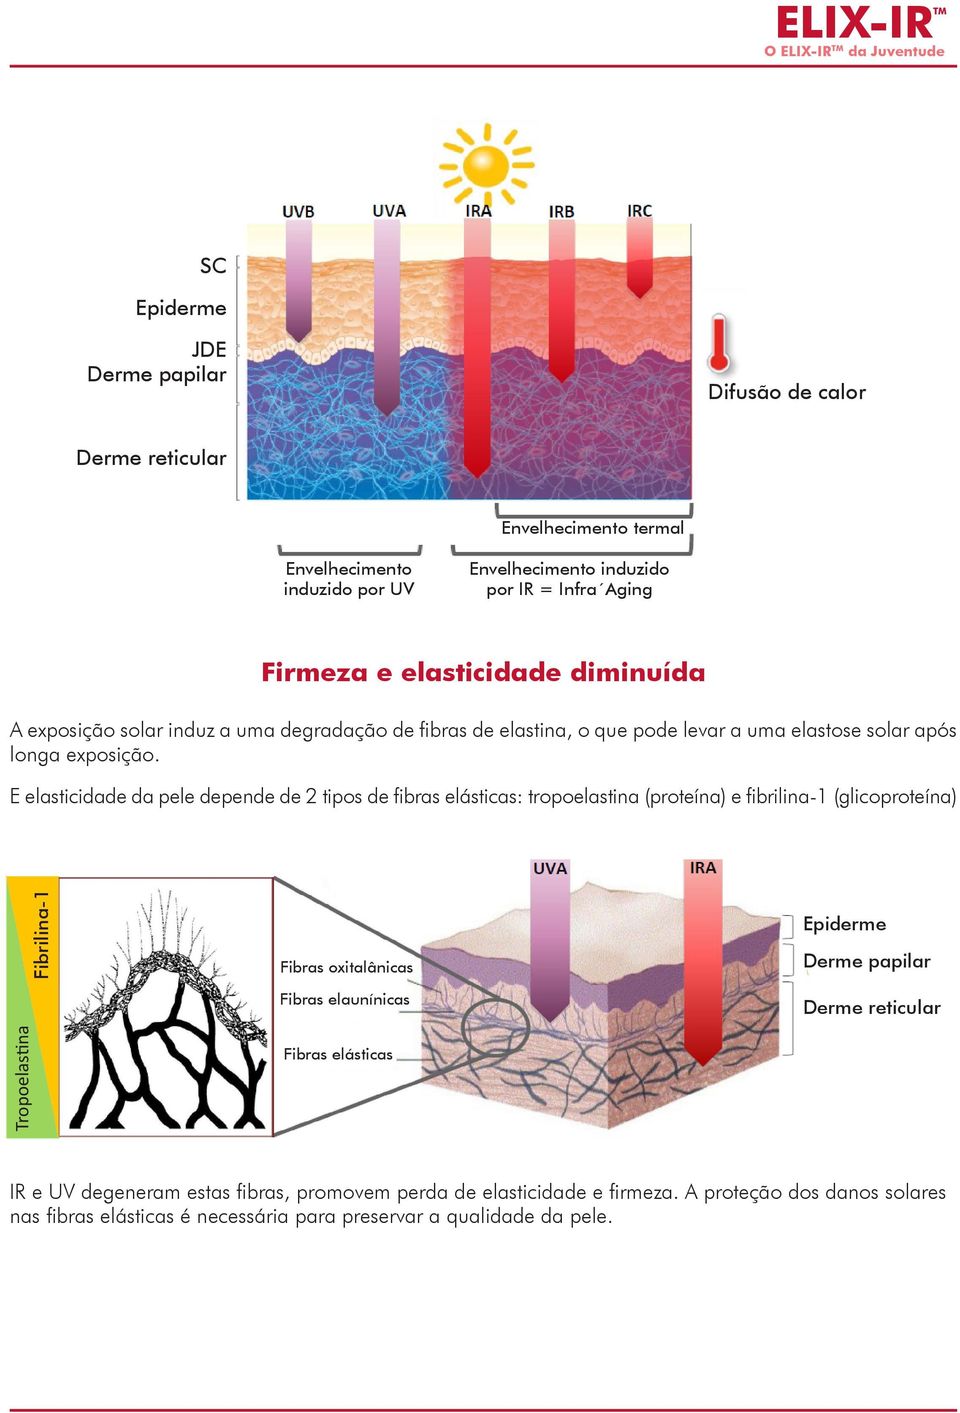 E elasticidade da pele depende de 2 tipos de fibras elásticas: tropoelastina (proteína) e fibrilina-1 (glicoproteína) Fibrilina-1 Fibras oxitalânicas Fibras elaunínicas Epiderme